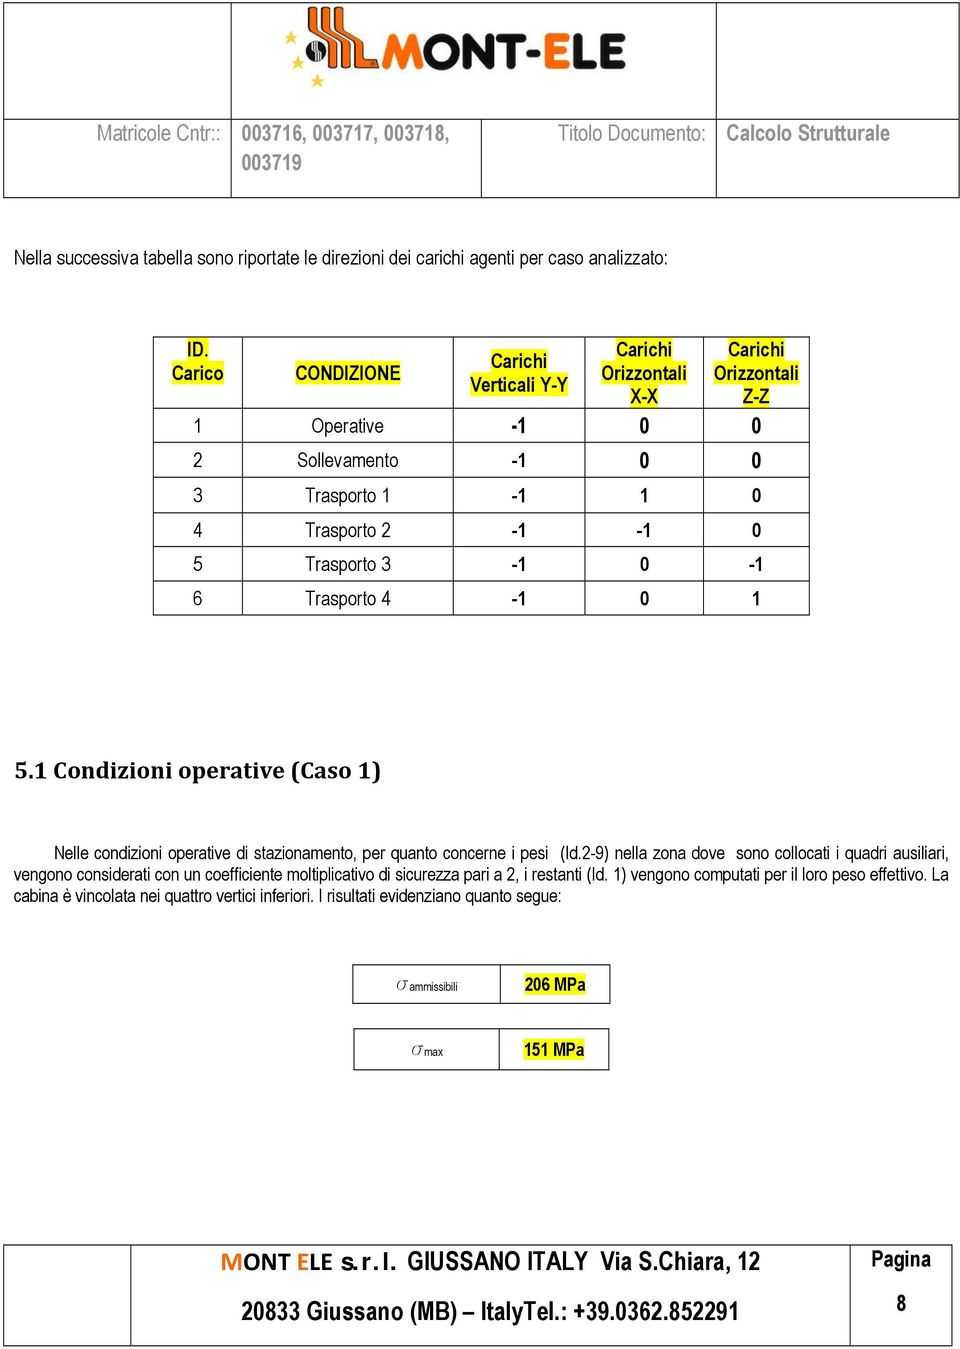 0-1 6 Trasporto 4-1 0 1 5.1 Condizioni operative (Caso 1) Nelle condizioni operative di stazionamento, per quanto concerne i pesi (Id.